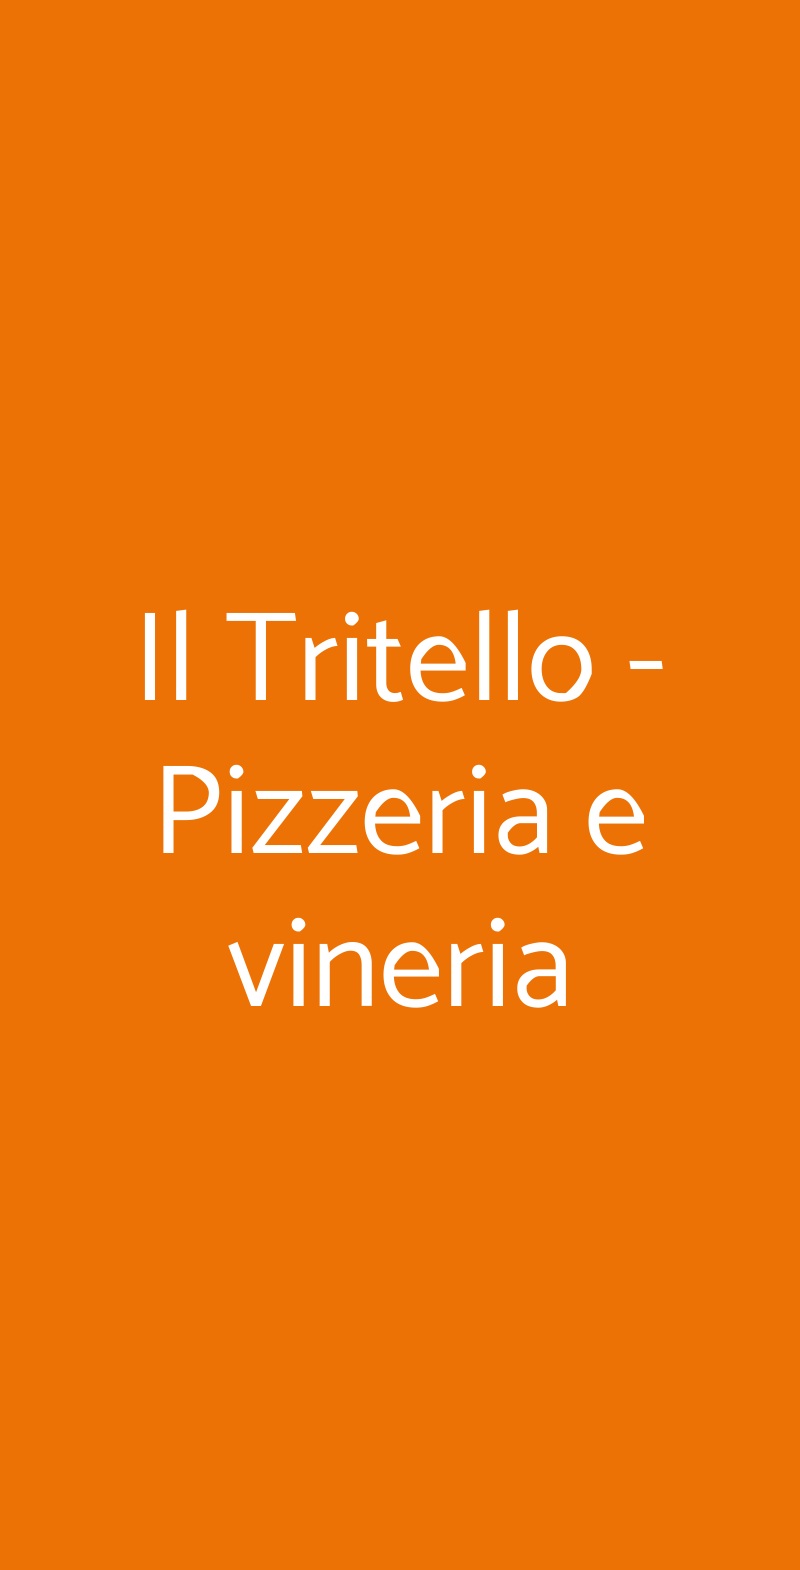 Il Tritello - Pizzeria e vineria San Giuseppe Vesuviano menù 1 pagina